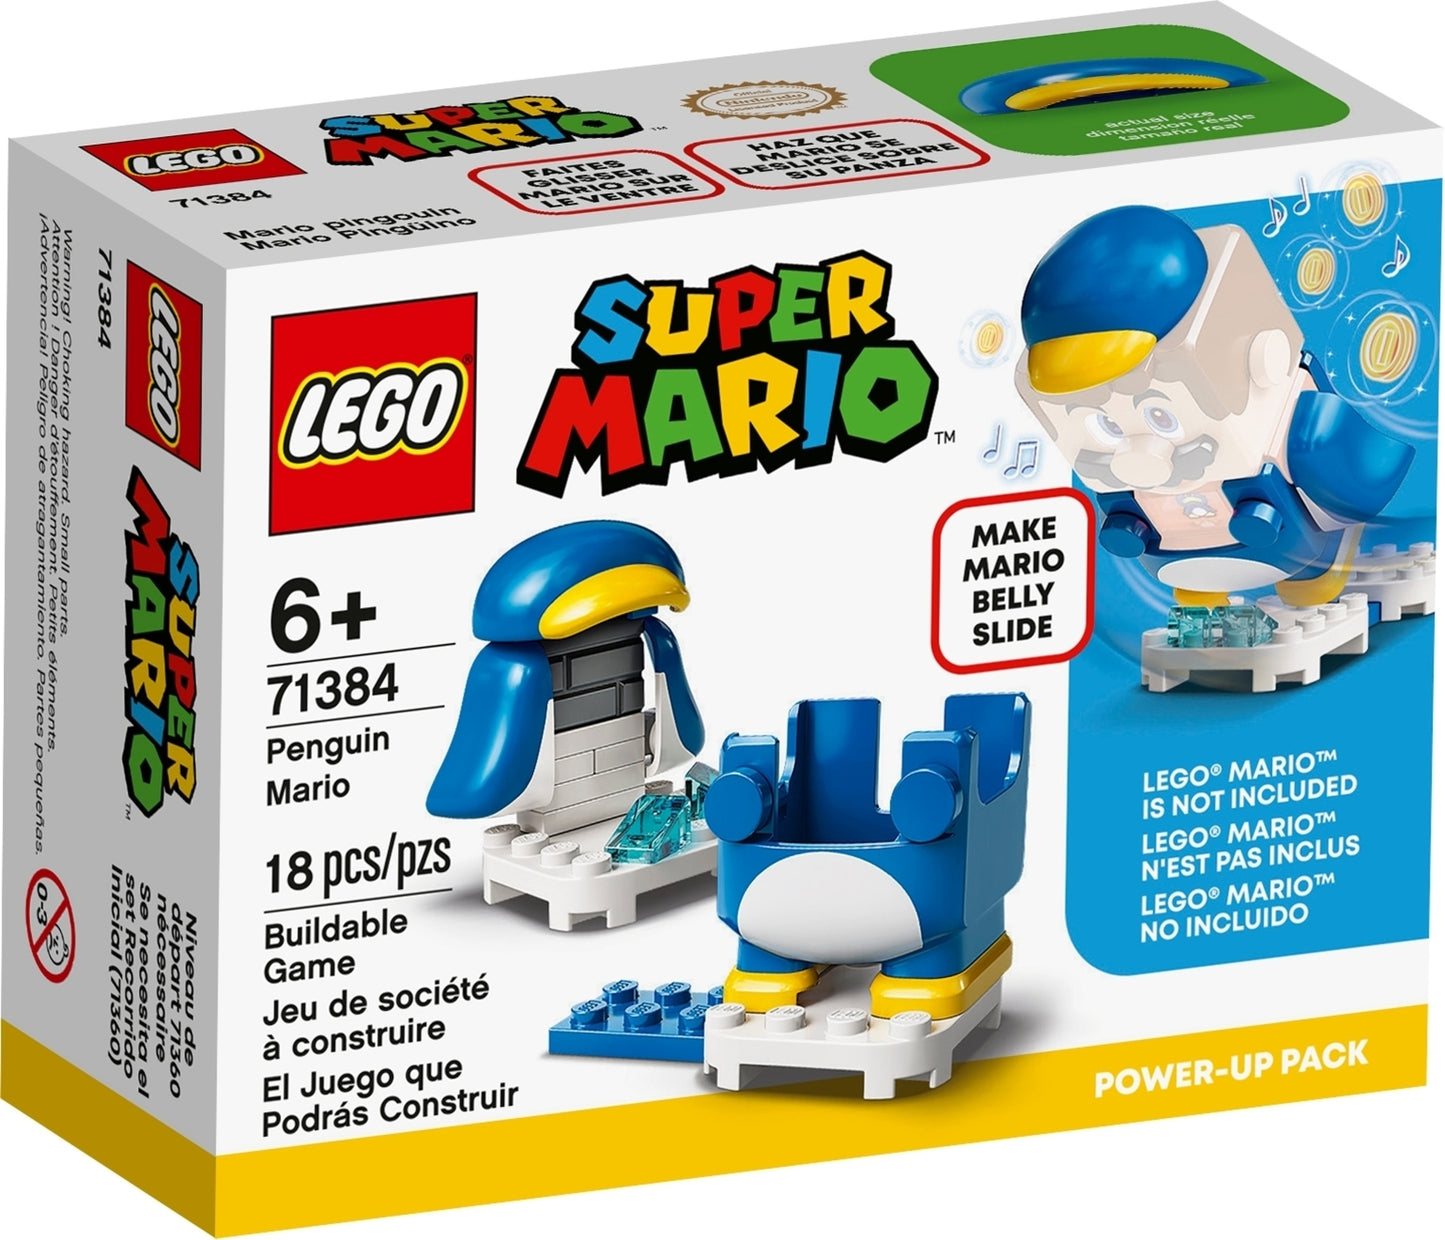 71384 LEGO Super Mario - Mario Pinguino - Power Up Pack